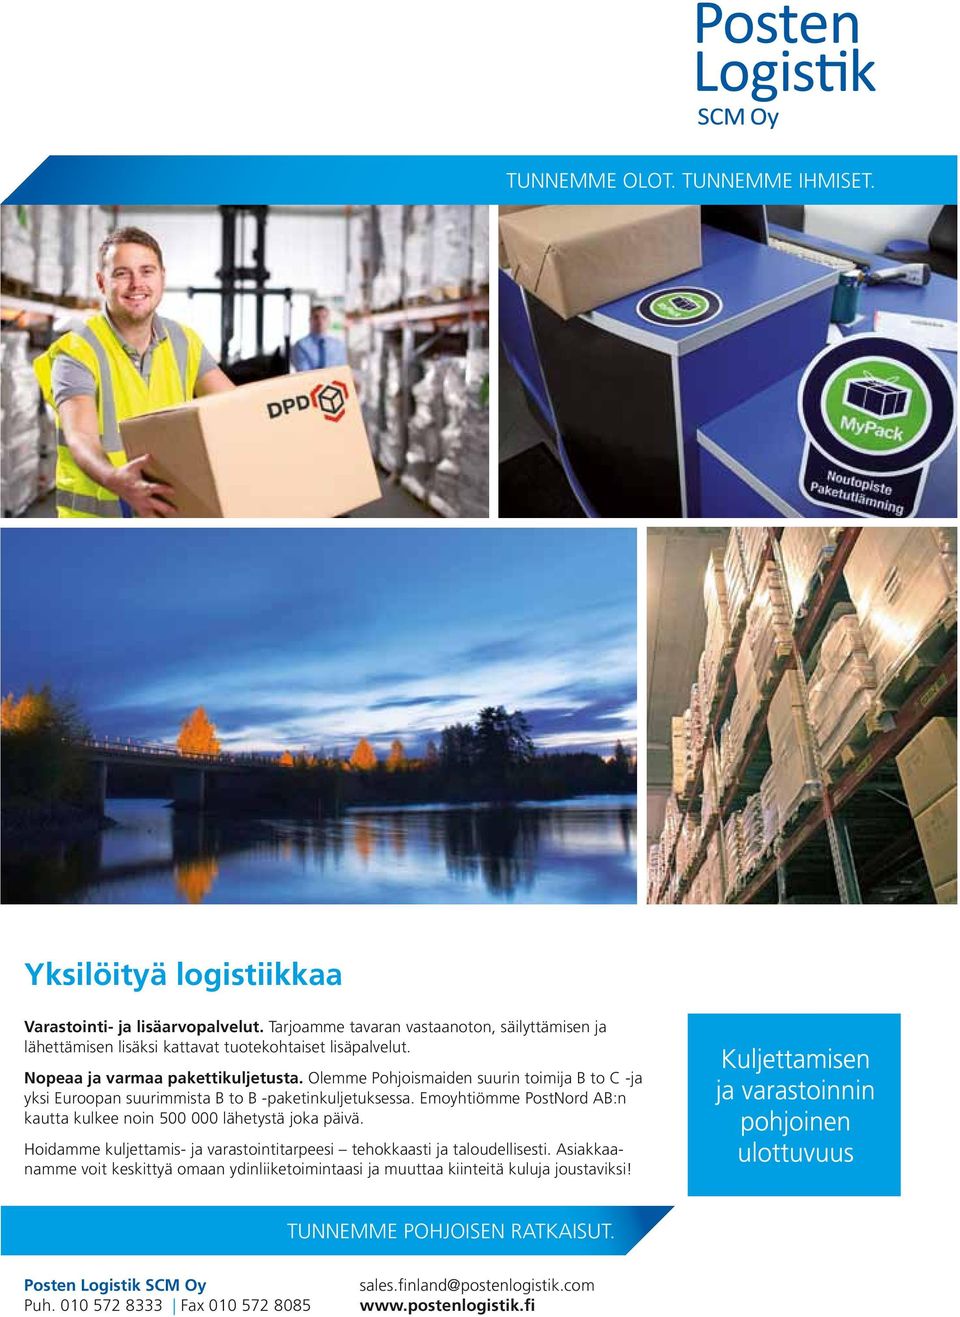 Olemme Pohjoismaiden suurin toimija B to C -ja yksi Euroopan suurimmista B to B -paketinkuljetuksessa. Emoyhtiömme PostNord AB:n kautta kulkee noin 500 000 lähetystä joka päivä.